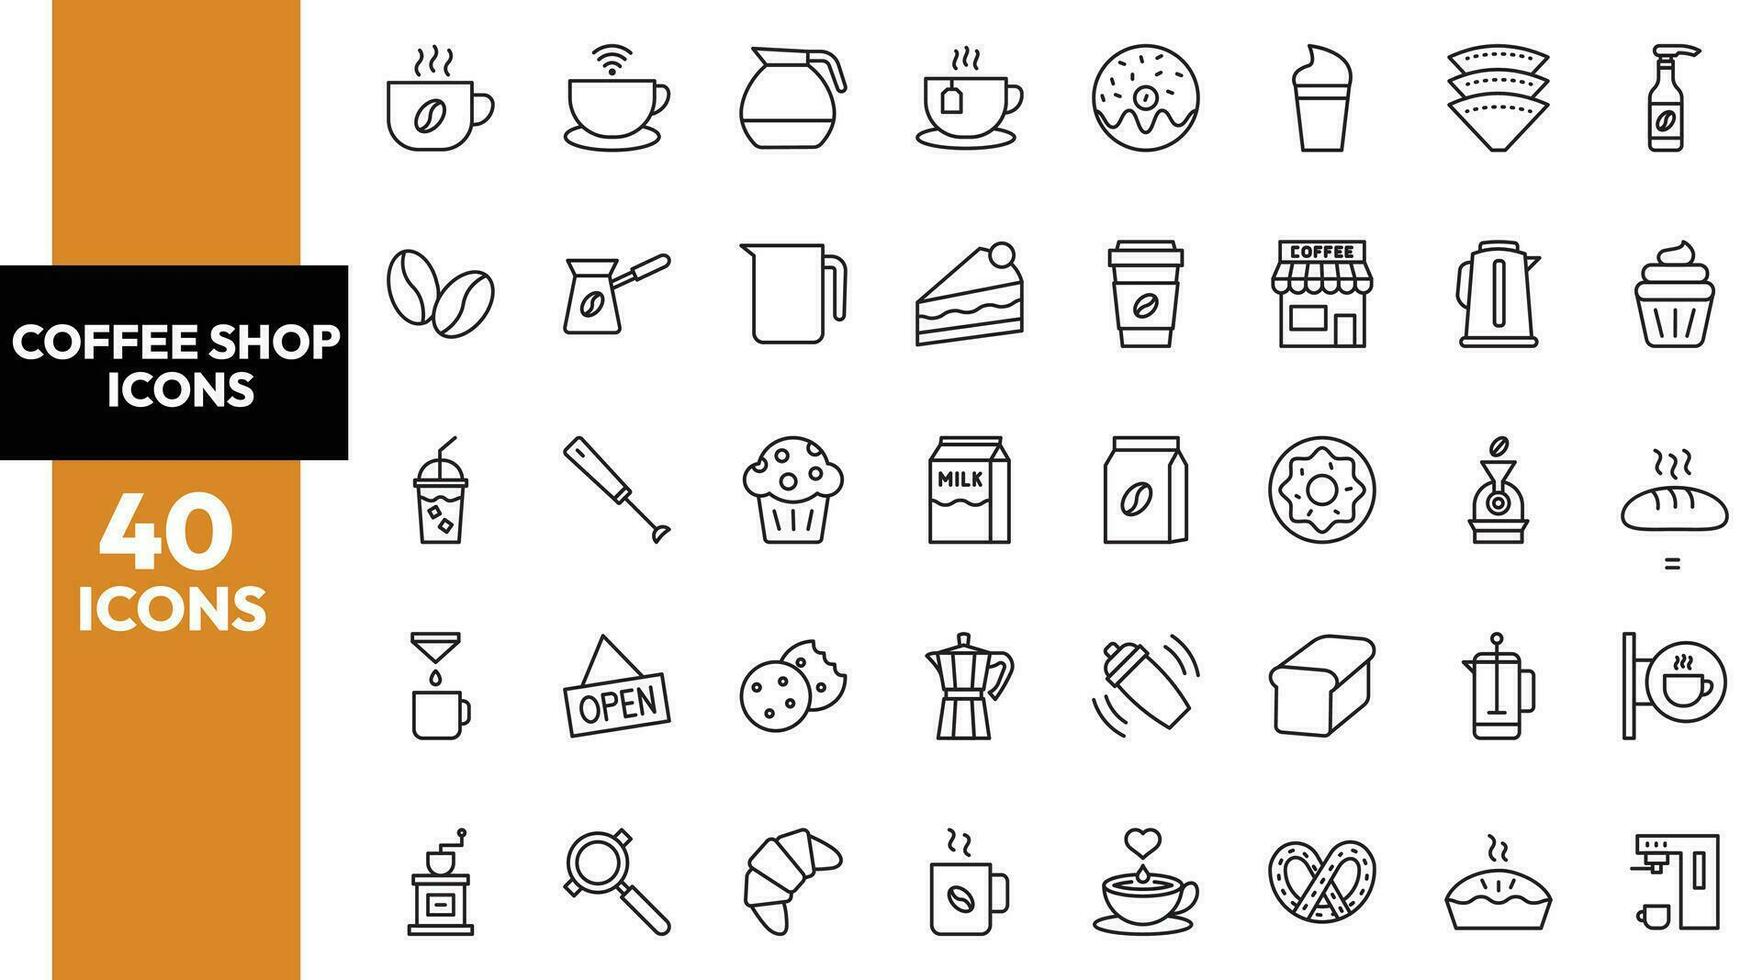 coffee shop icons, coffee shop icon pack, coffee icons vector